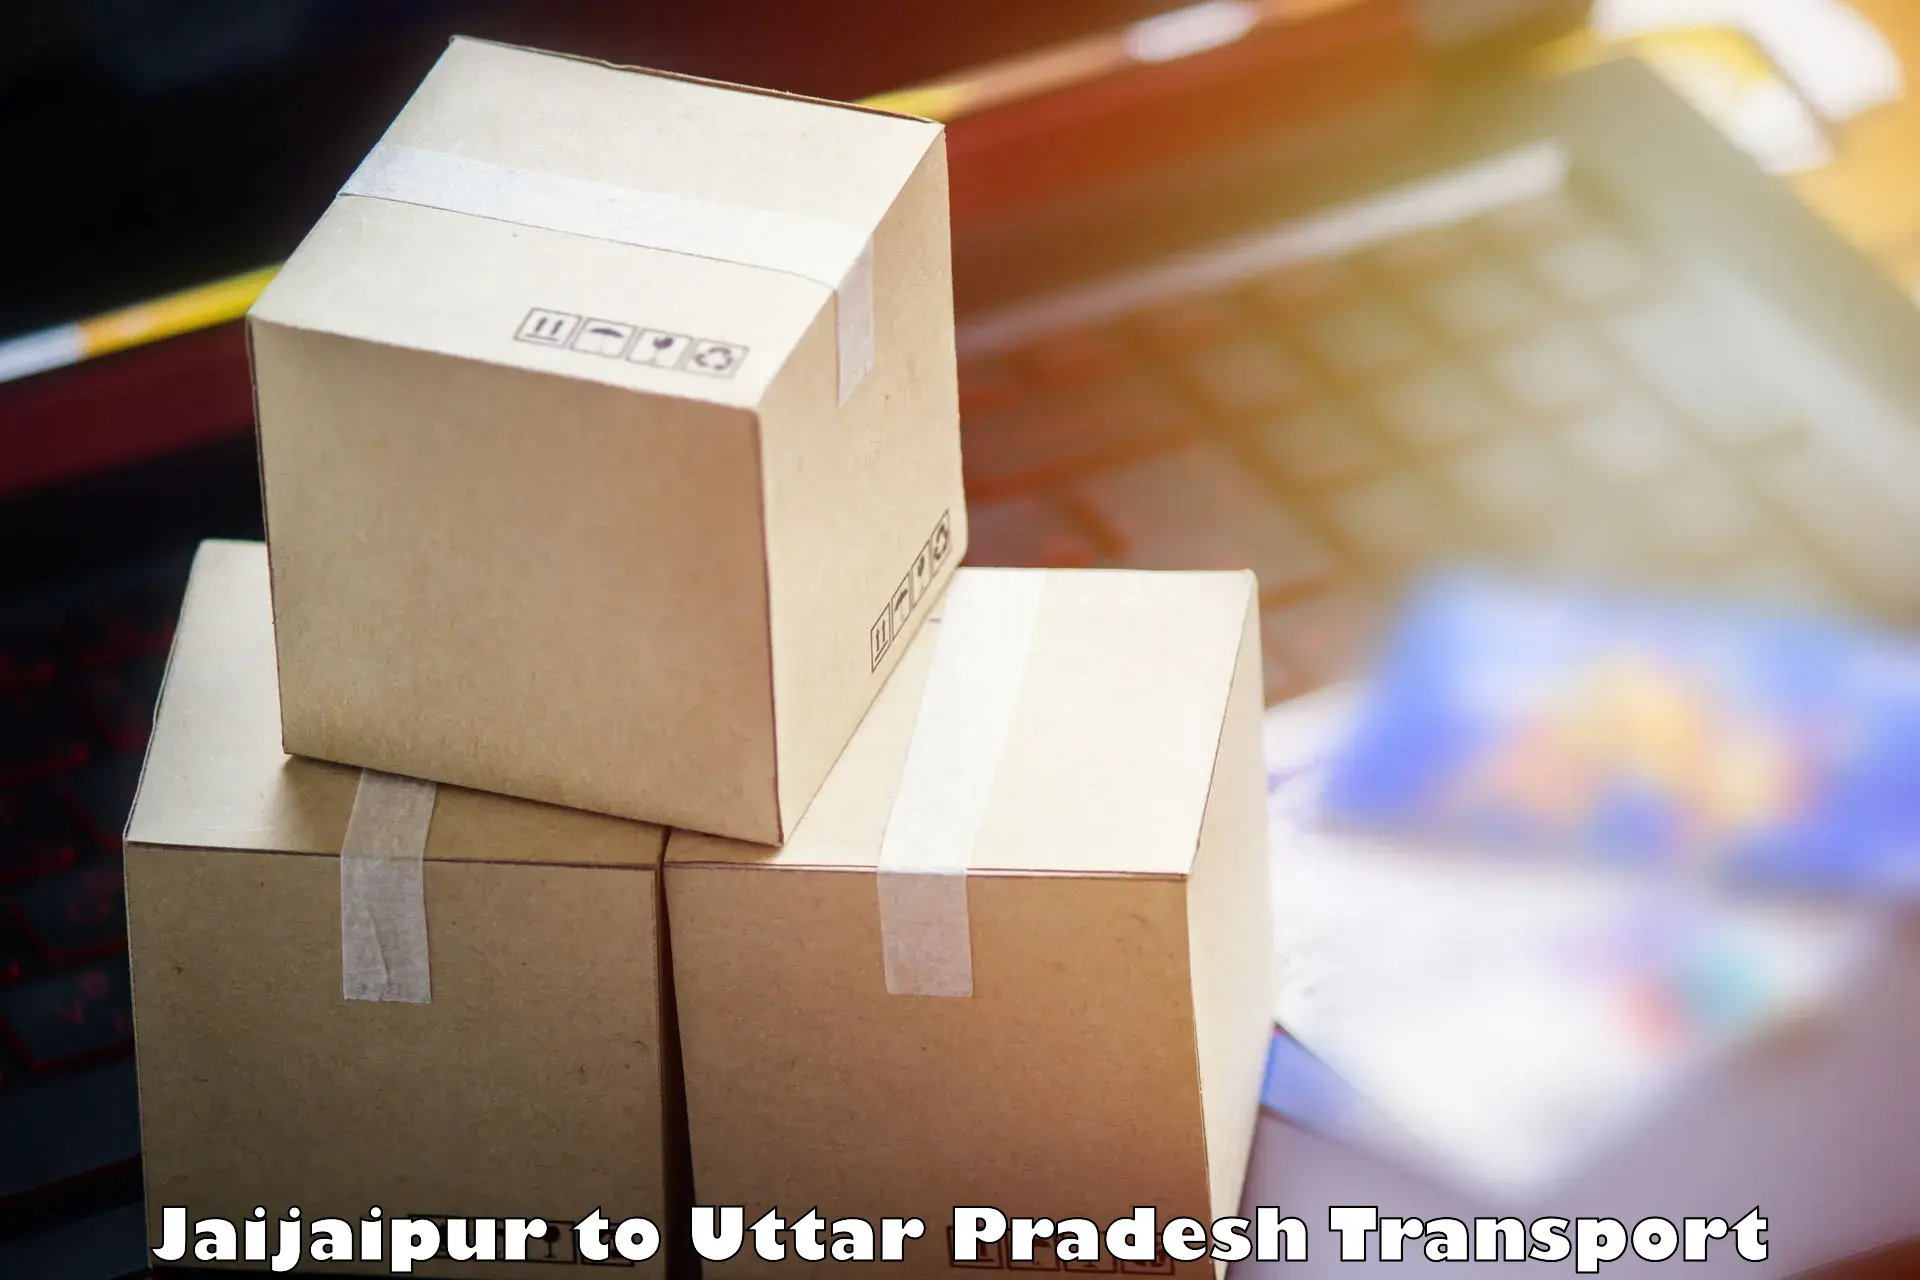 Cargo transportation services Jaijaipur to Lucknow